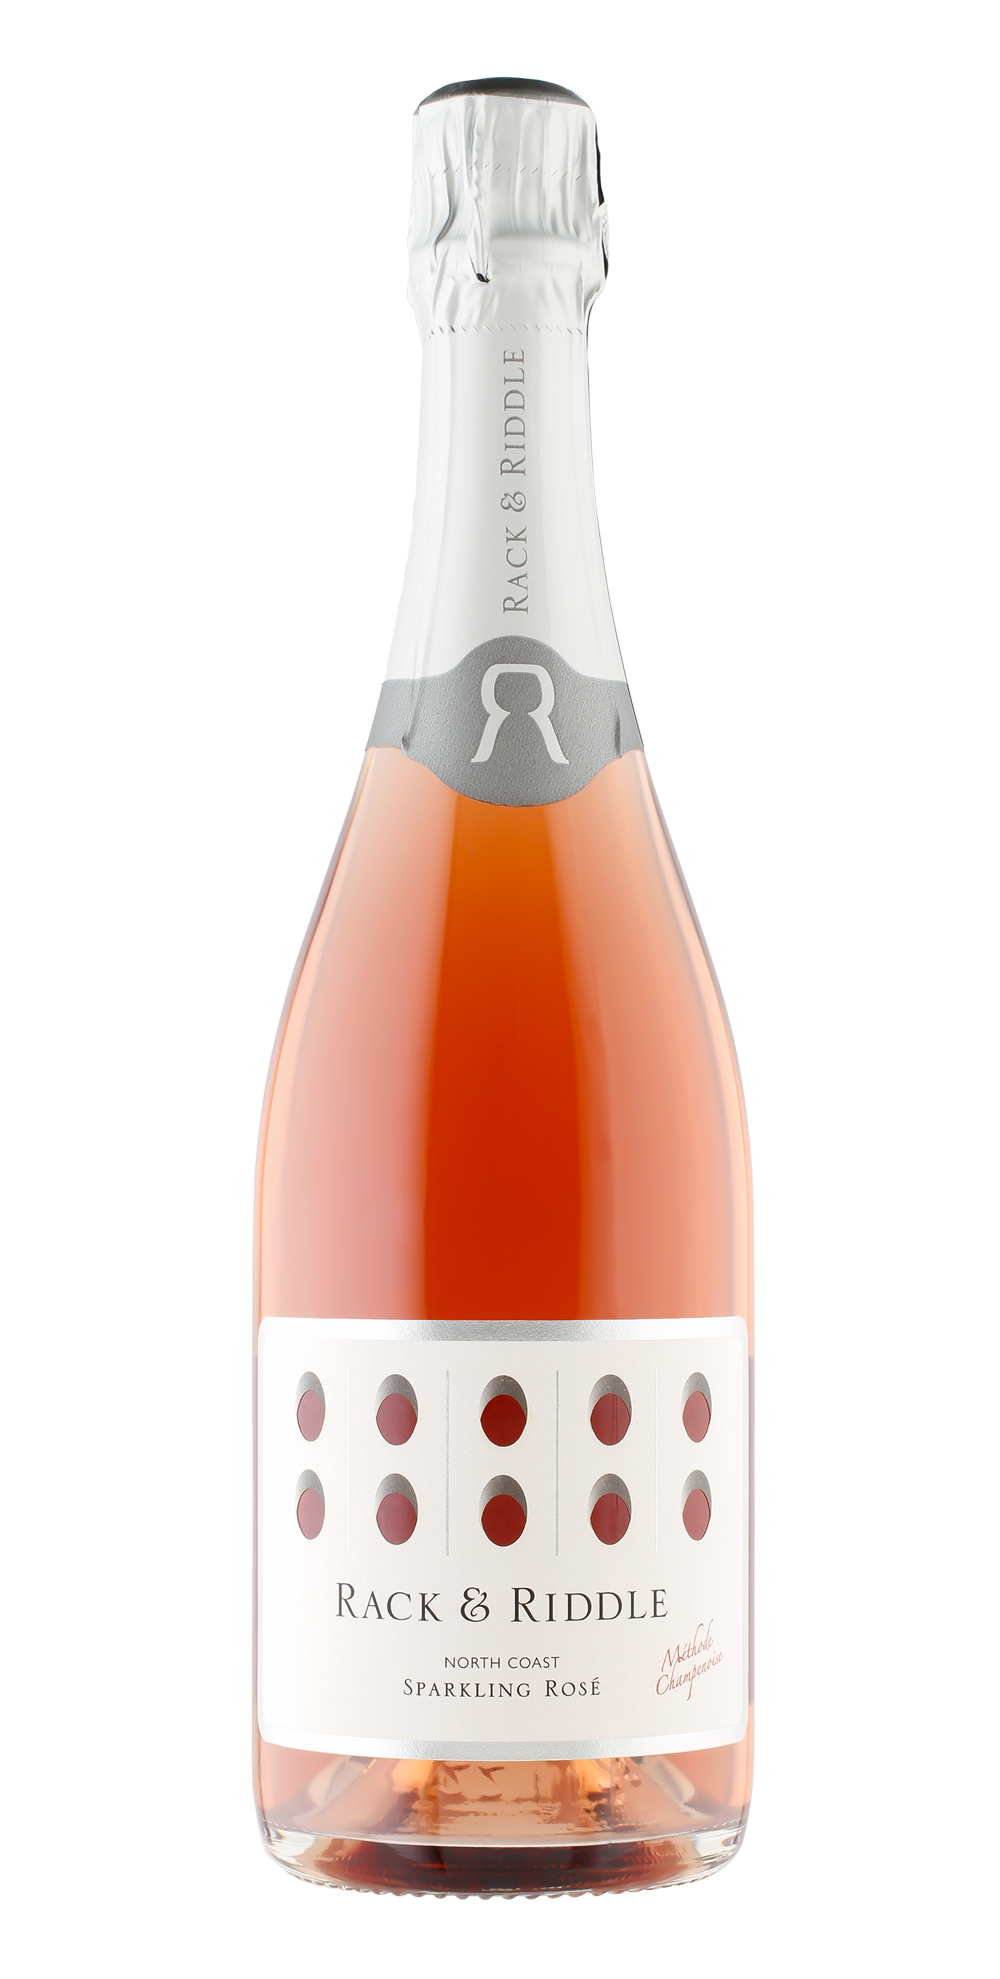 Bottle of Rack & Riddle North Coast Sparkling Rosé.